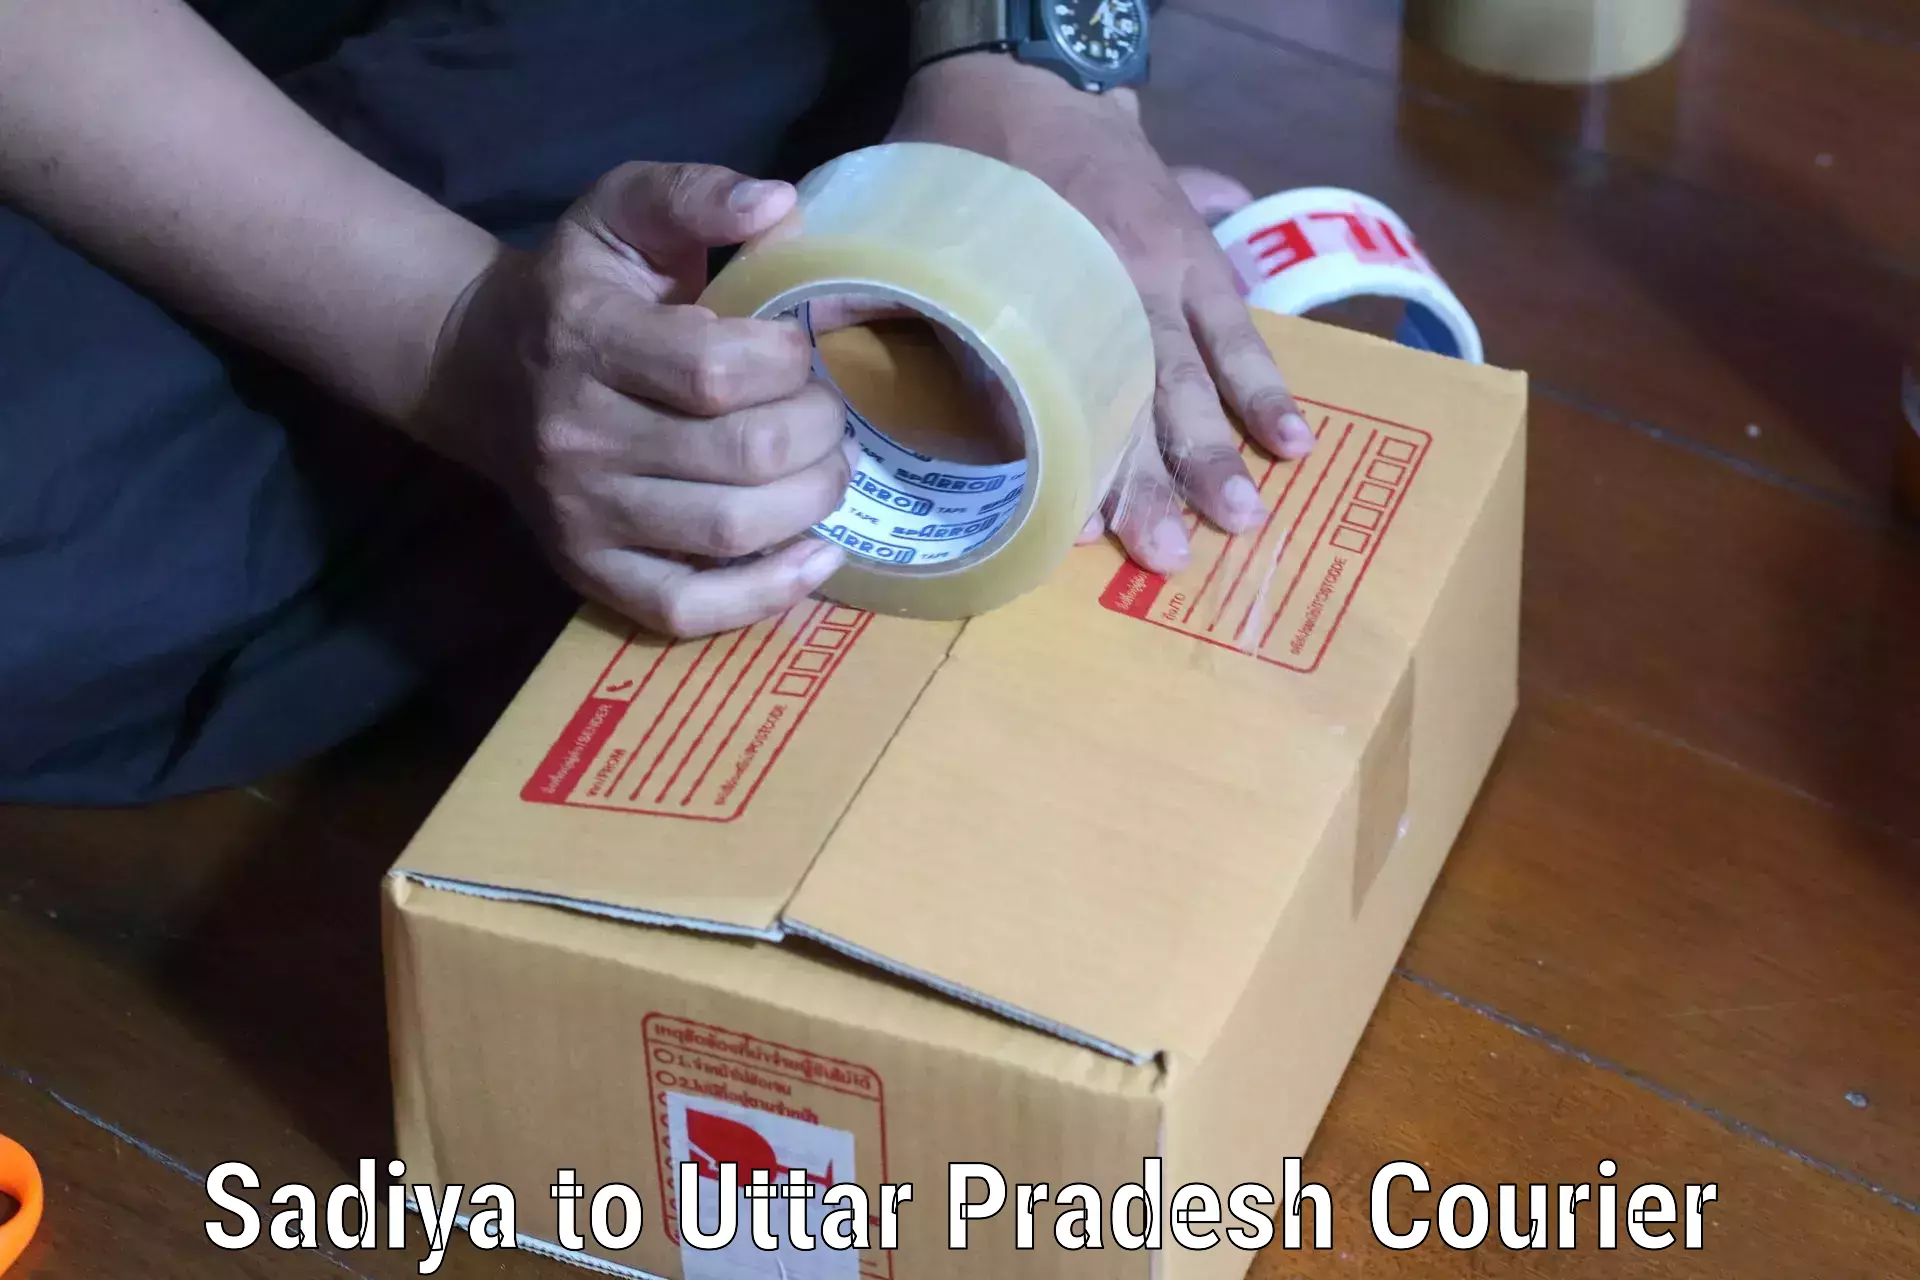 Nationwide parcel services Sadiya to Chitrakoot